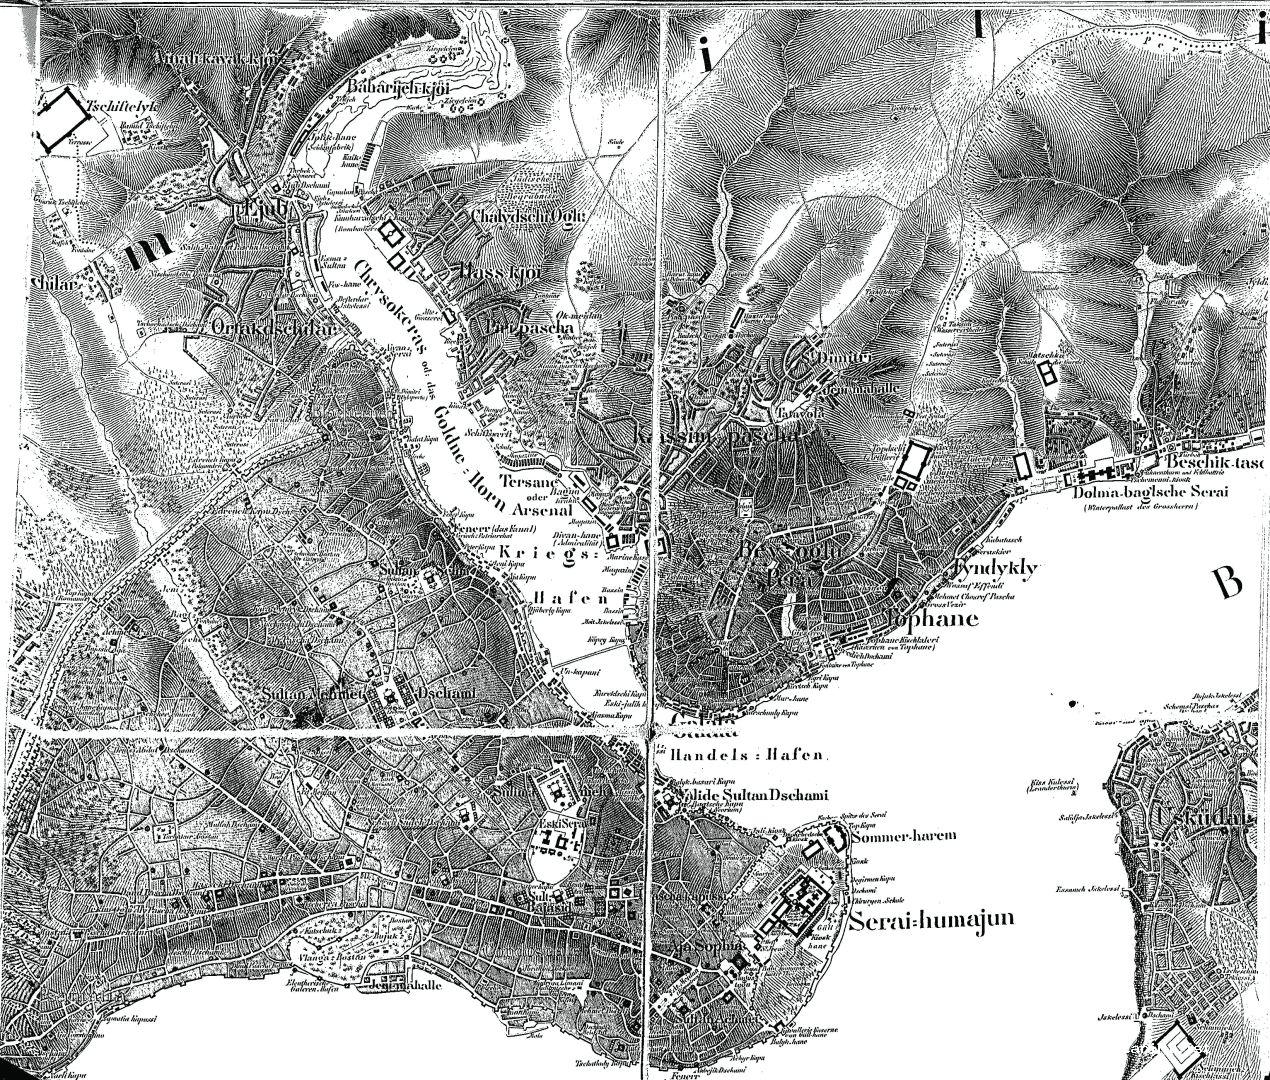 1- Von Moltke’nin İstanbul ve Boğaziçi haritasından detay